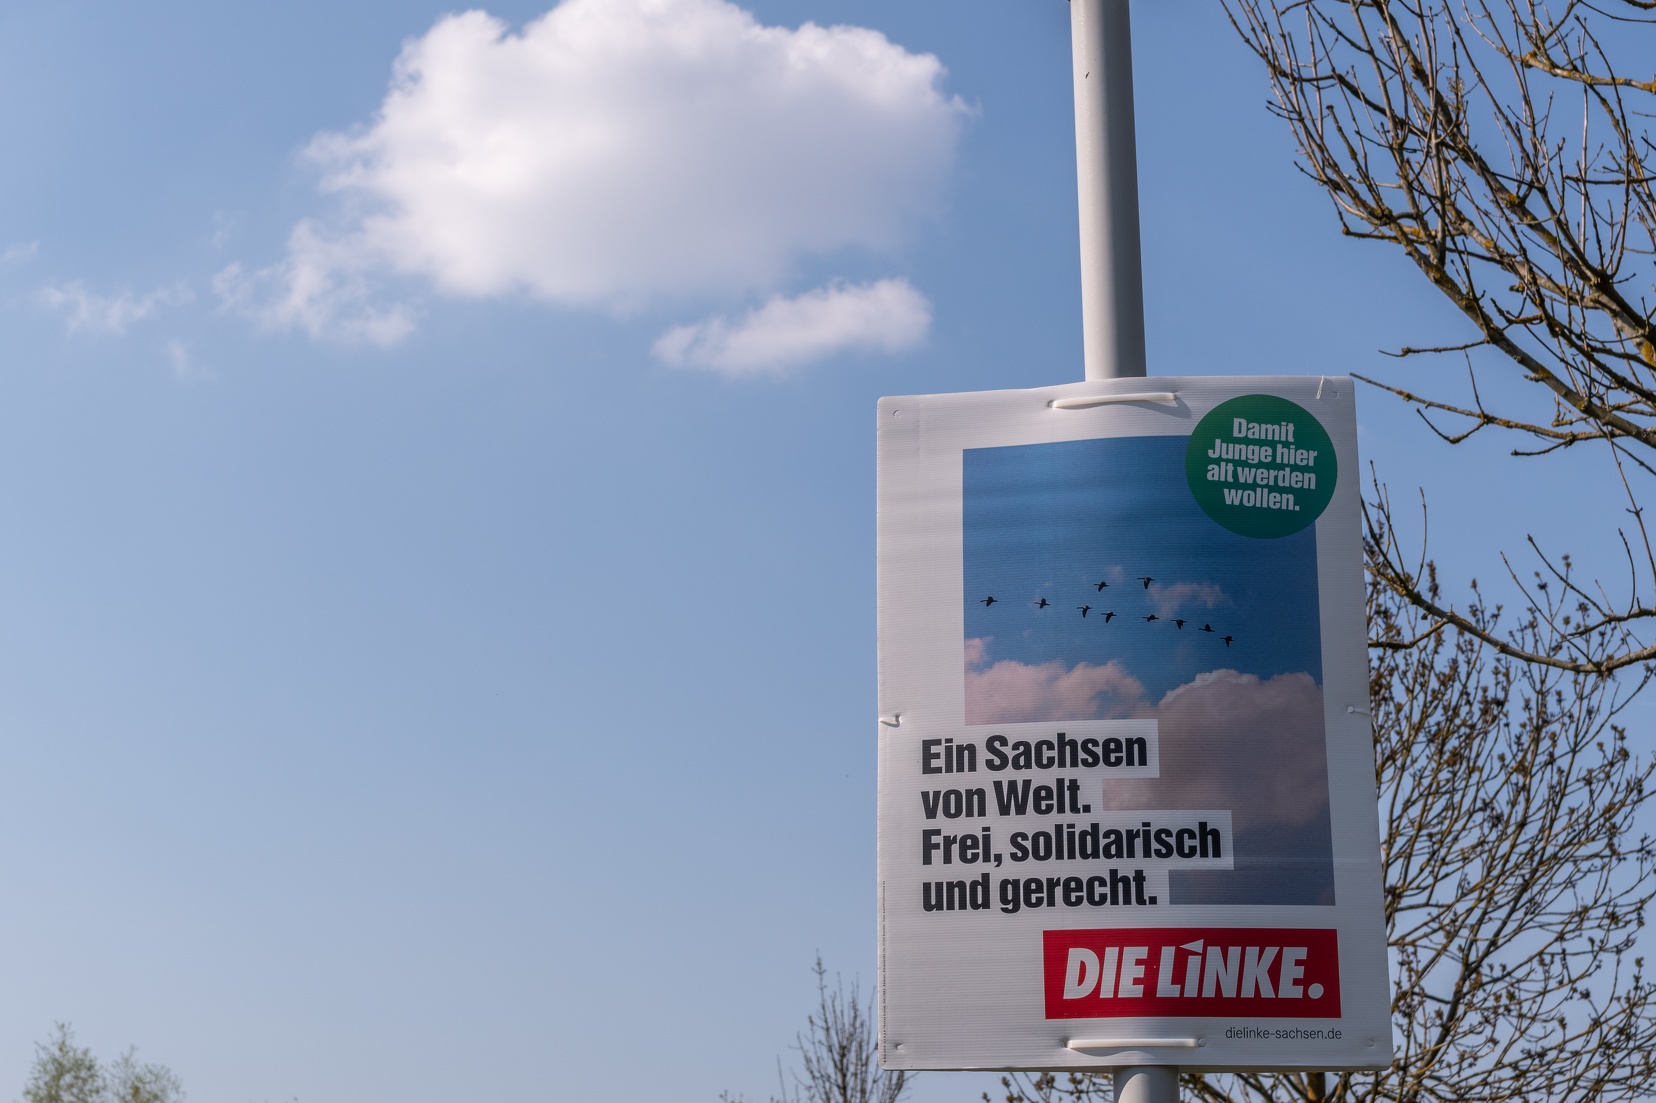 Zu sehen ist ein Wahlplakat mit dem Text: "Ein Sachsen von Welt. Frei, solidarisch und gerecht." Das Plakat hängt an einem Mast und im Hintergrund sind Wolken und auch blauer Himmel zu sehen, wie auch auf dem Plakat selbst.